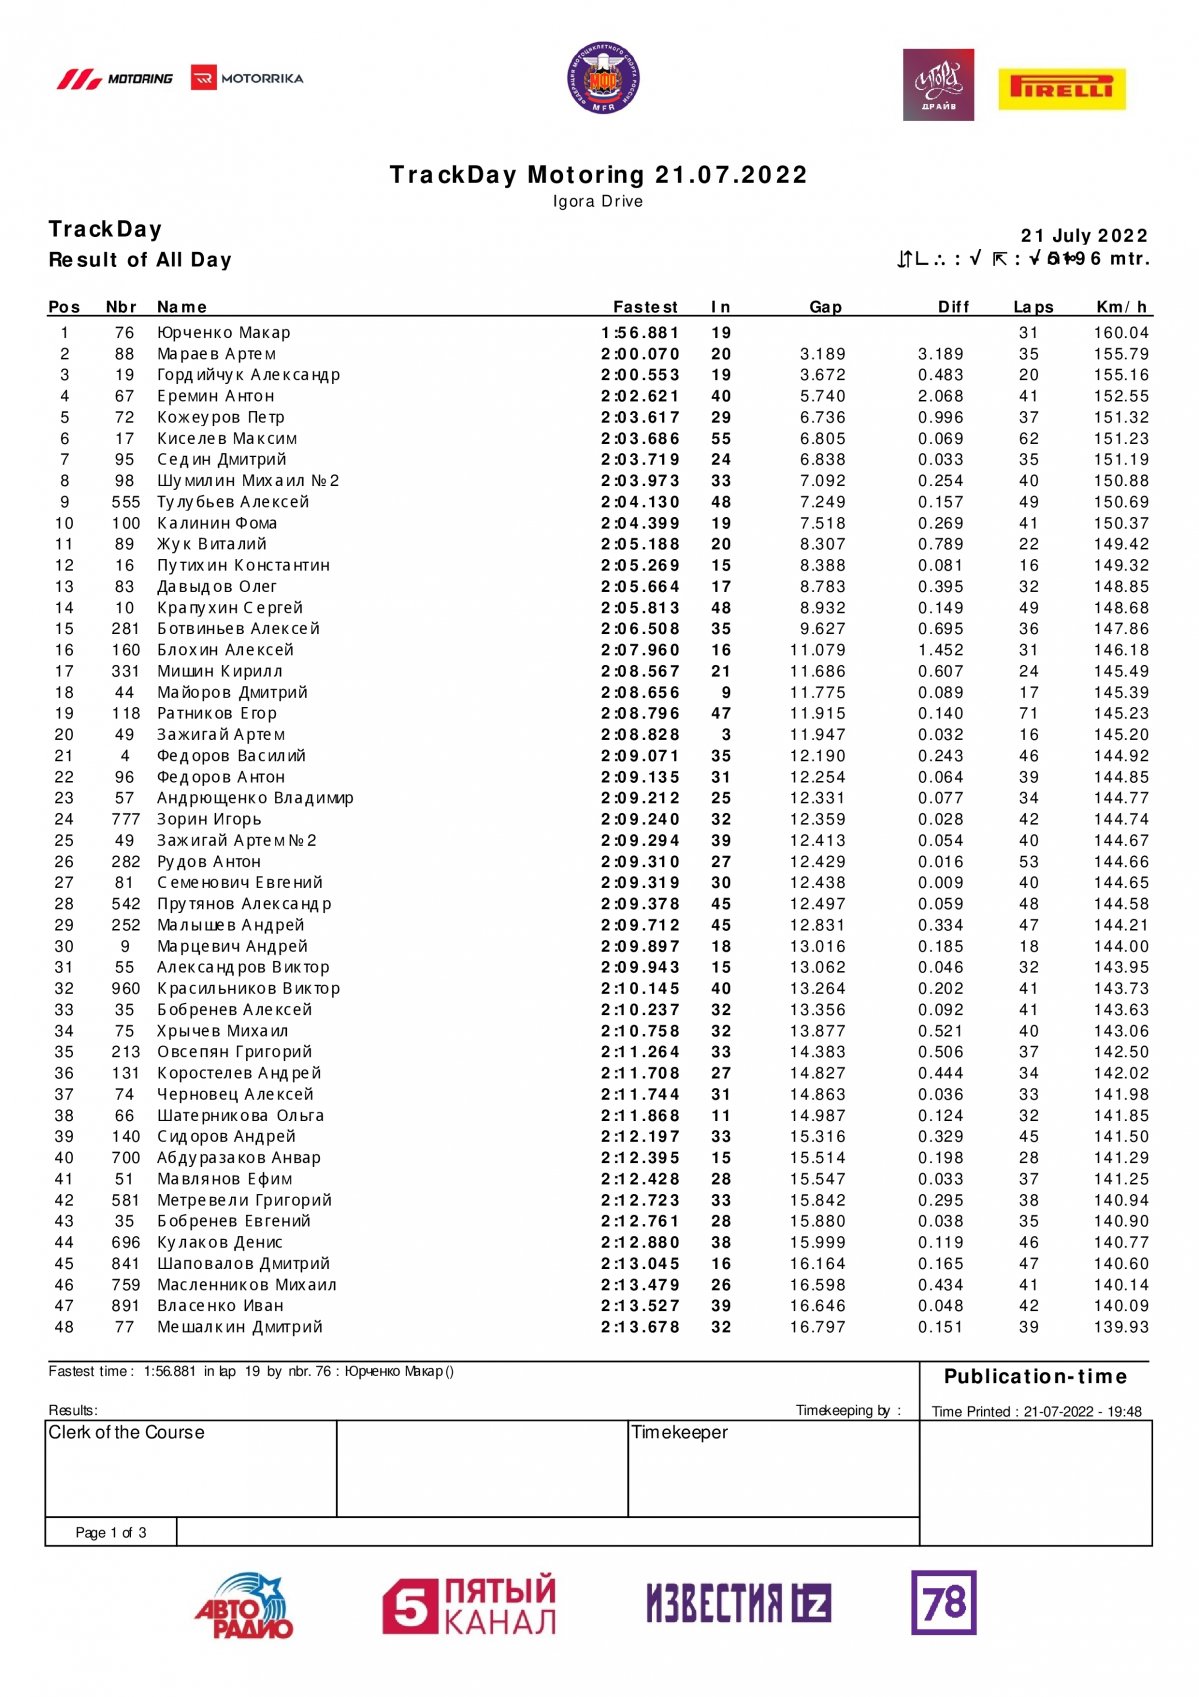 Сводные результаты 1 дня тестов чемпионата России, Игора Драйв, MotoGP